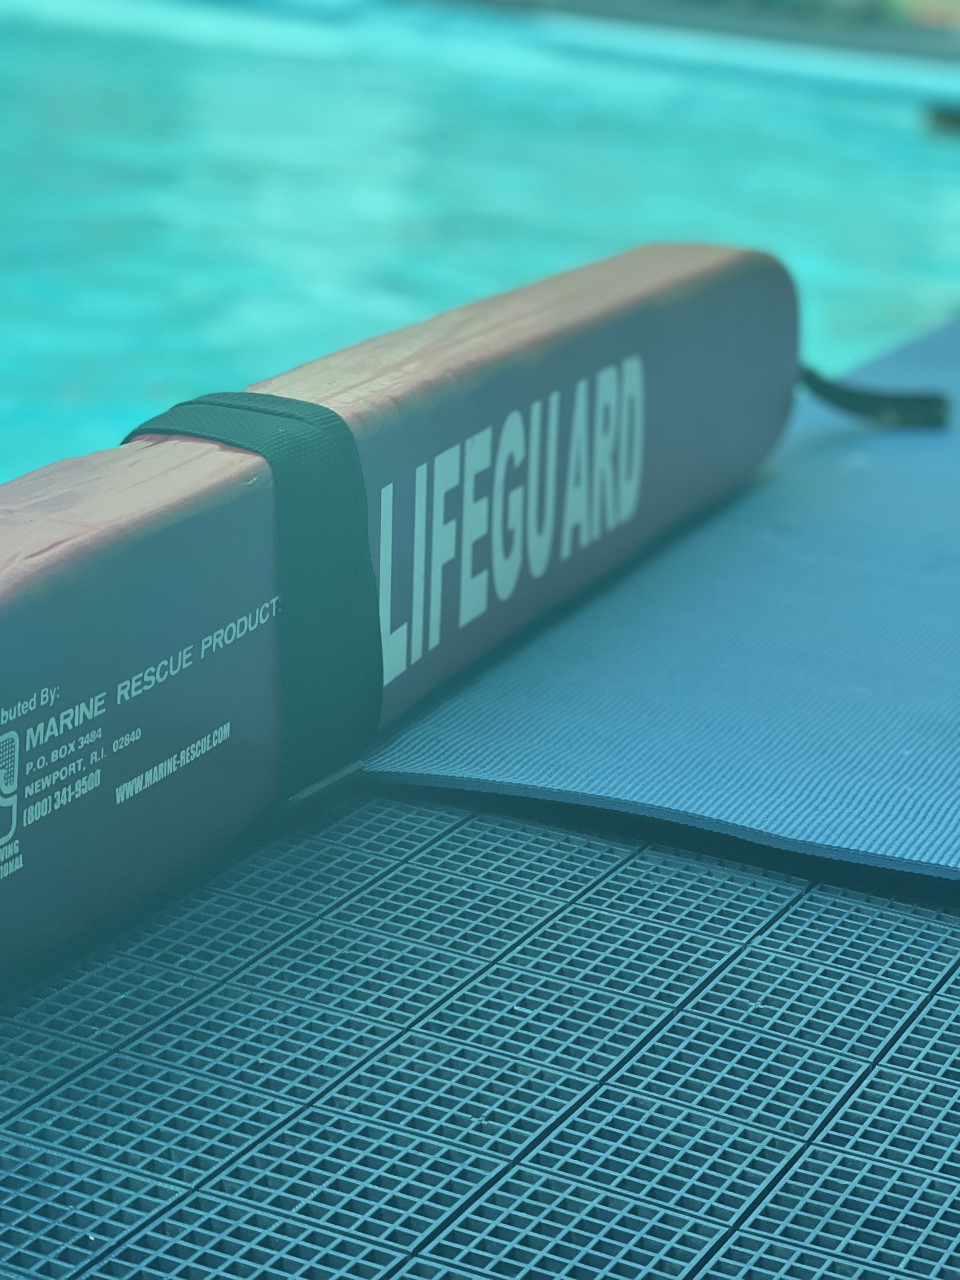 Upcoming Lifeguard Course